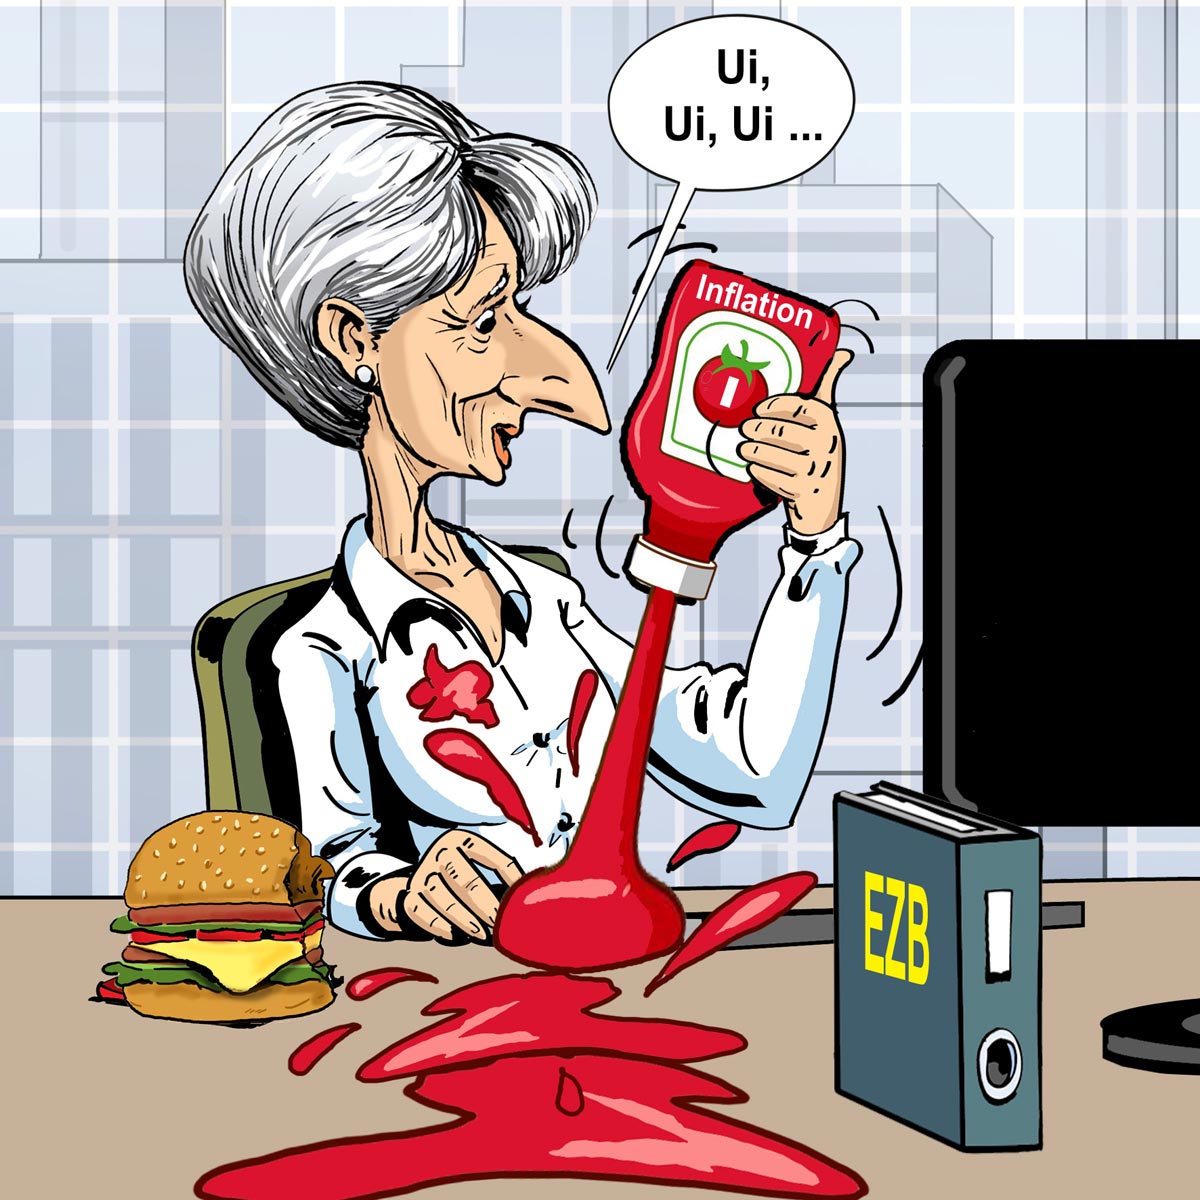 StiftungsfondsgedankenNo 5 - Frau Lagarde mit Ketchup